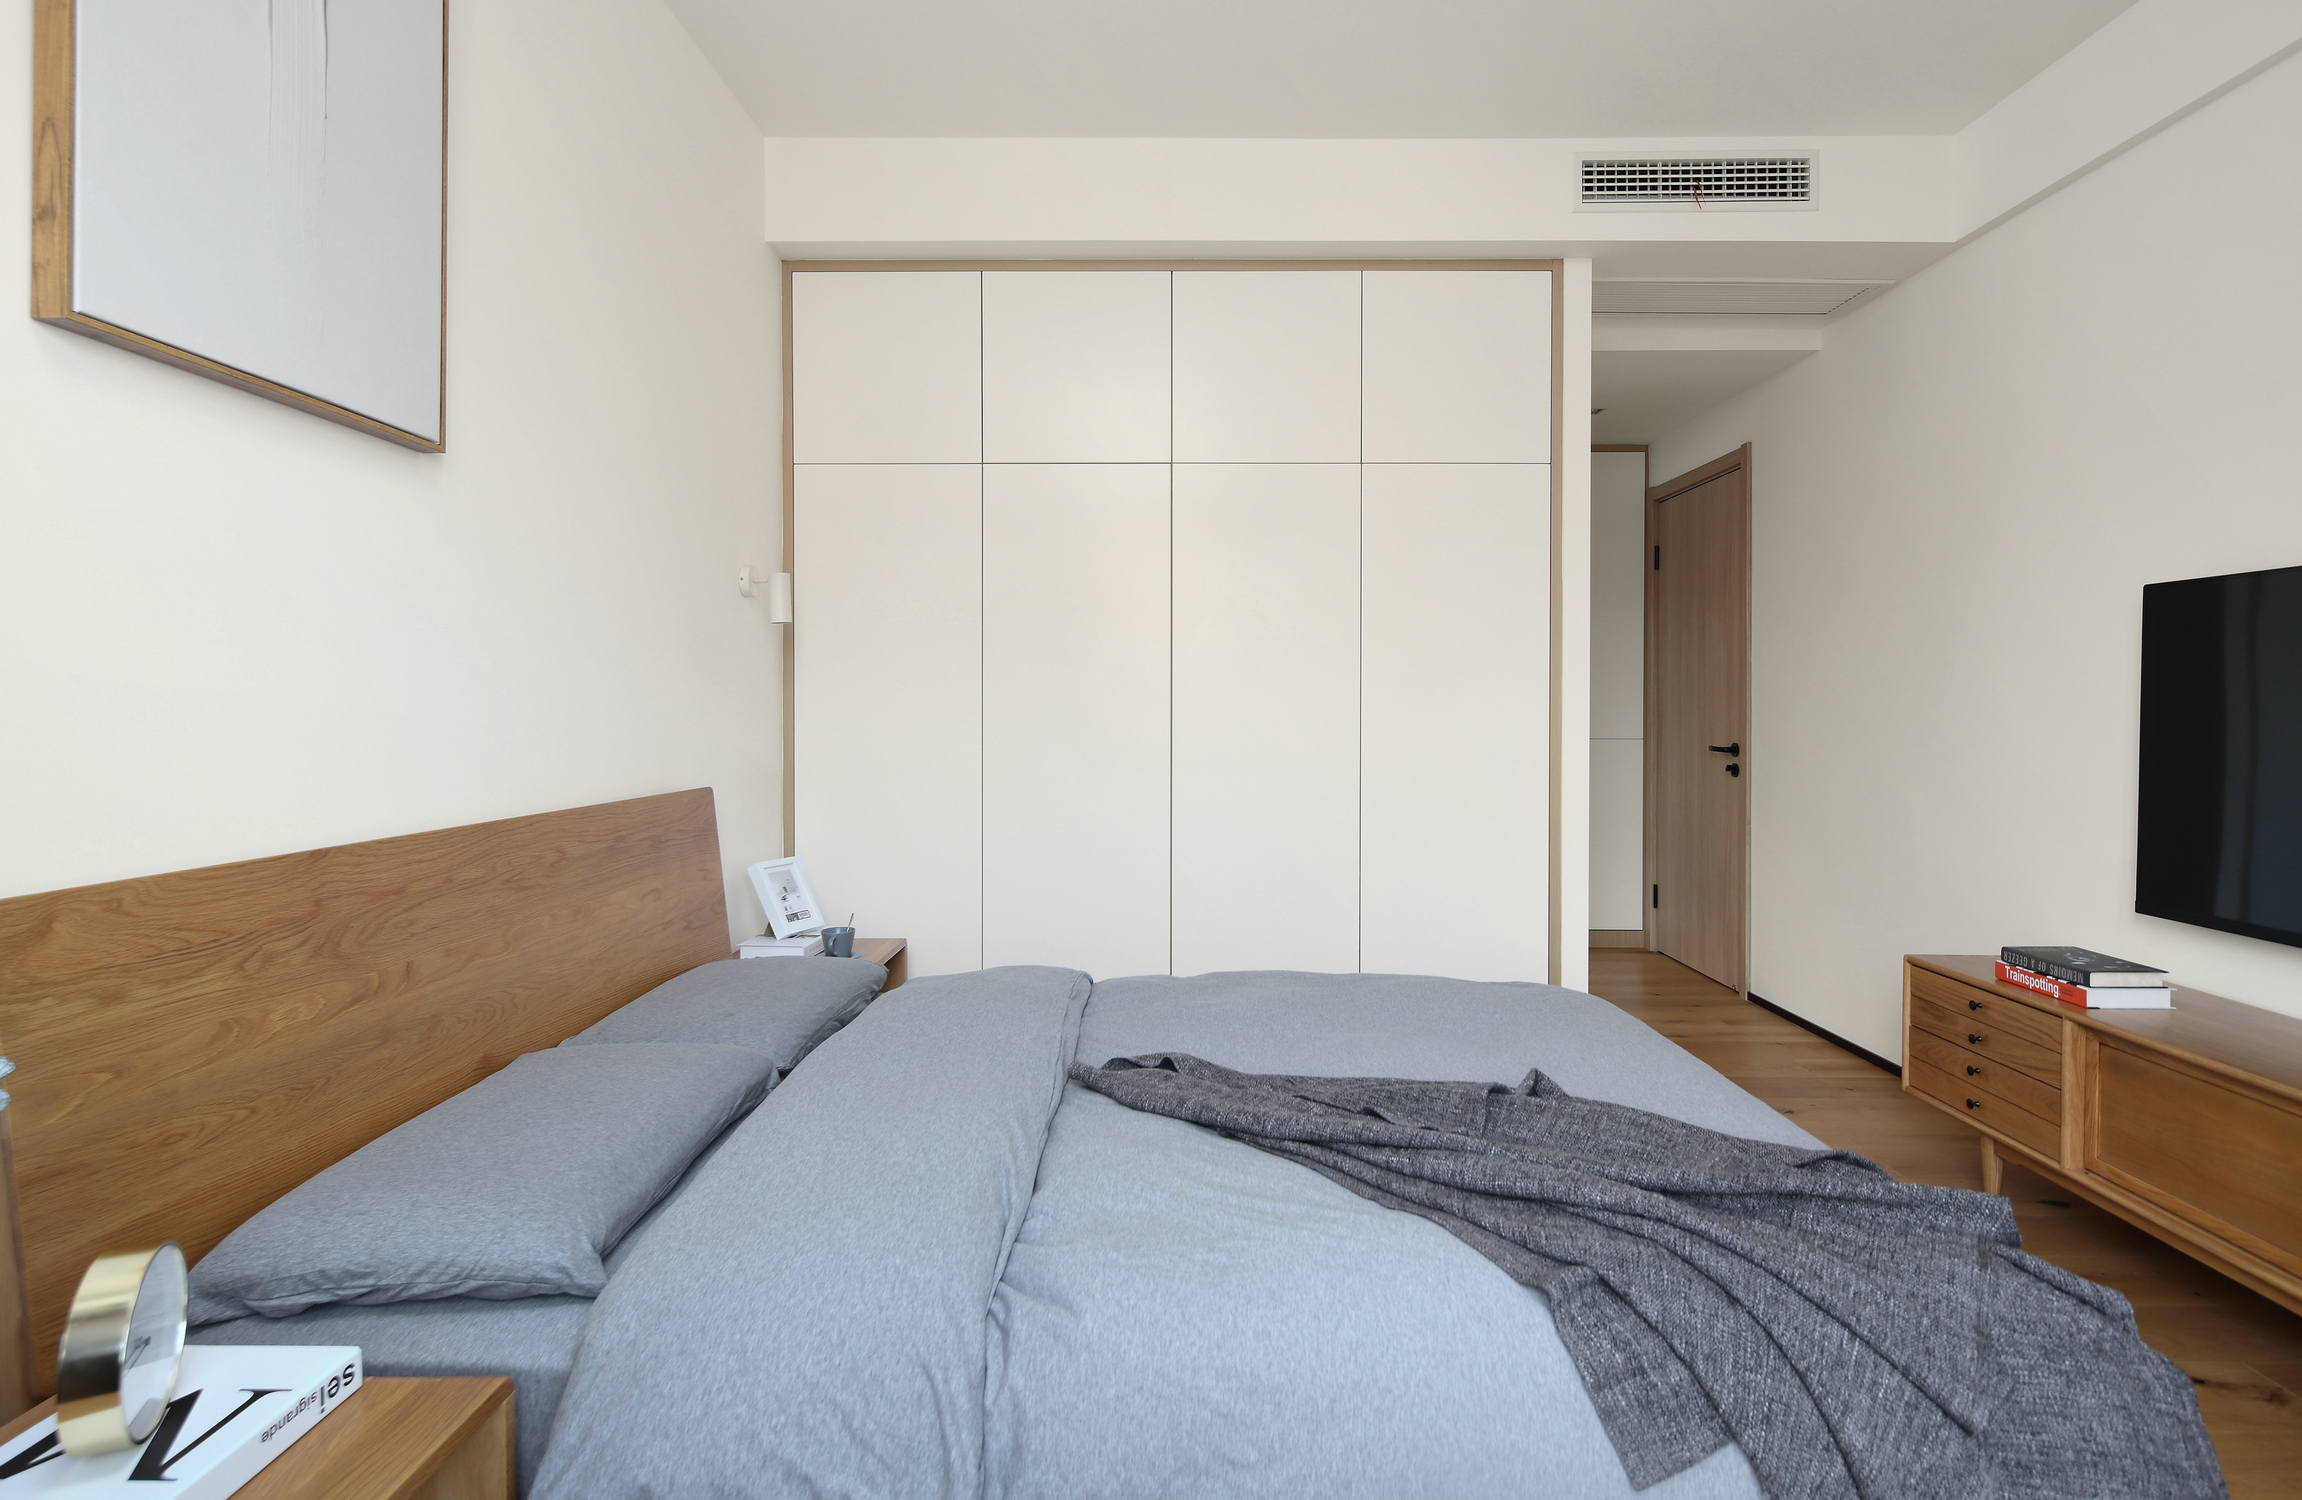 北欧日式三居卧室装修效果图